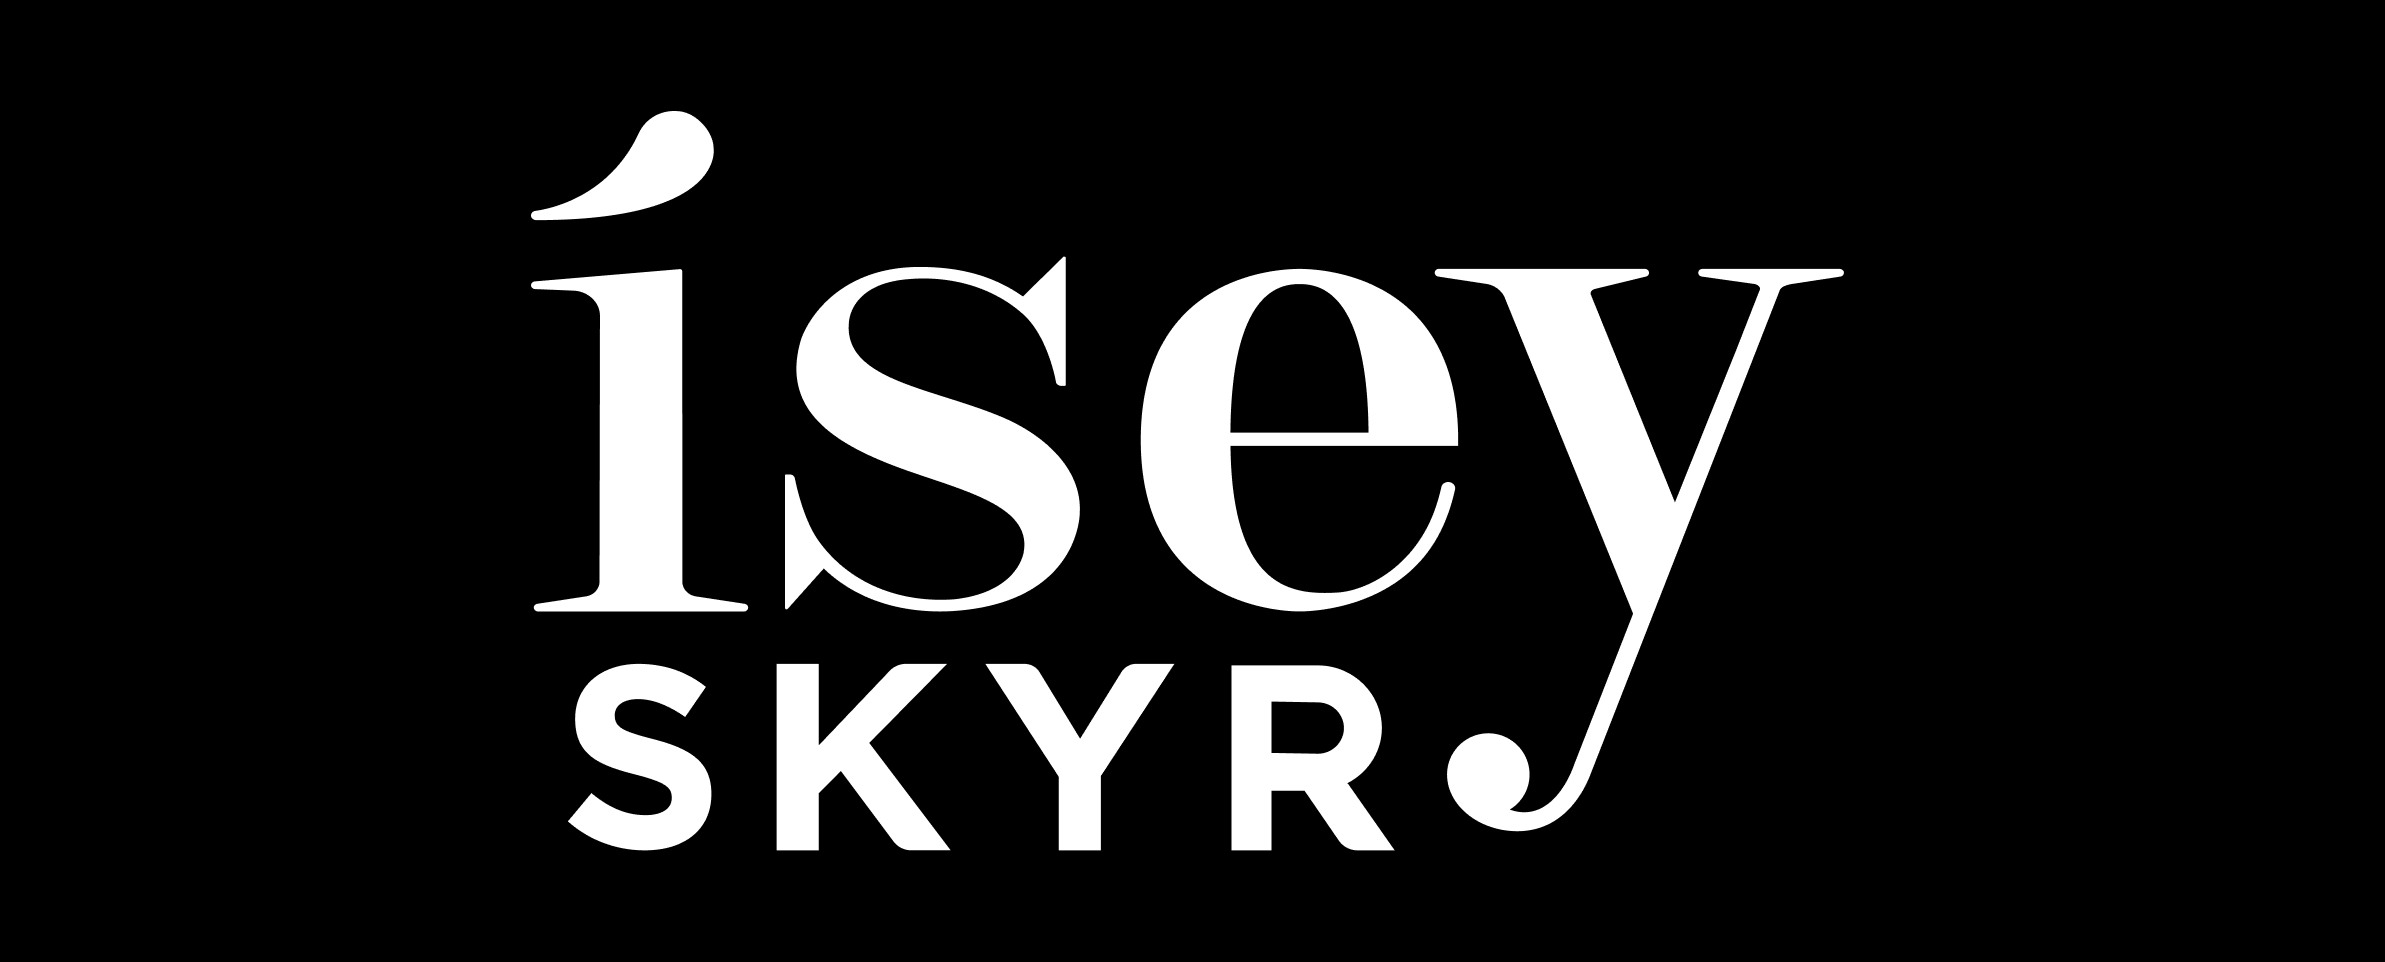 Isey Skyr